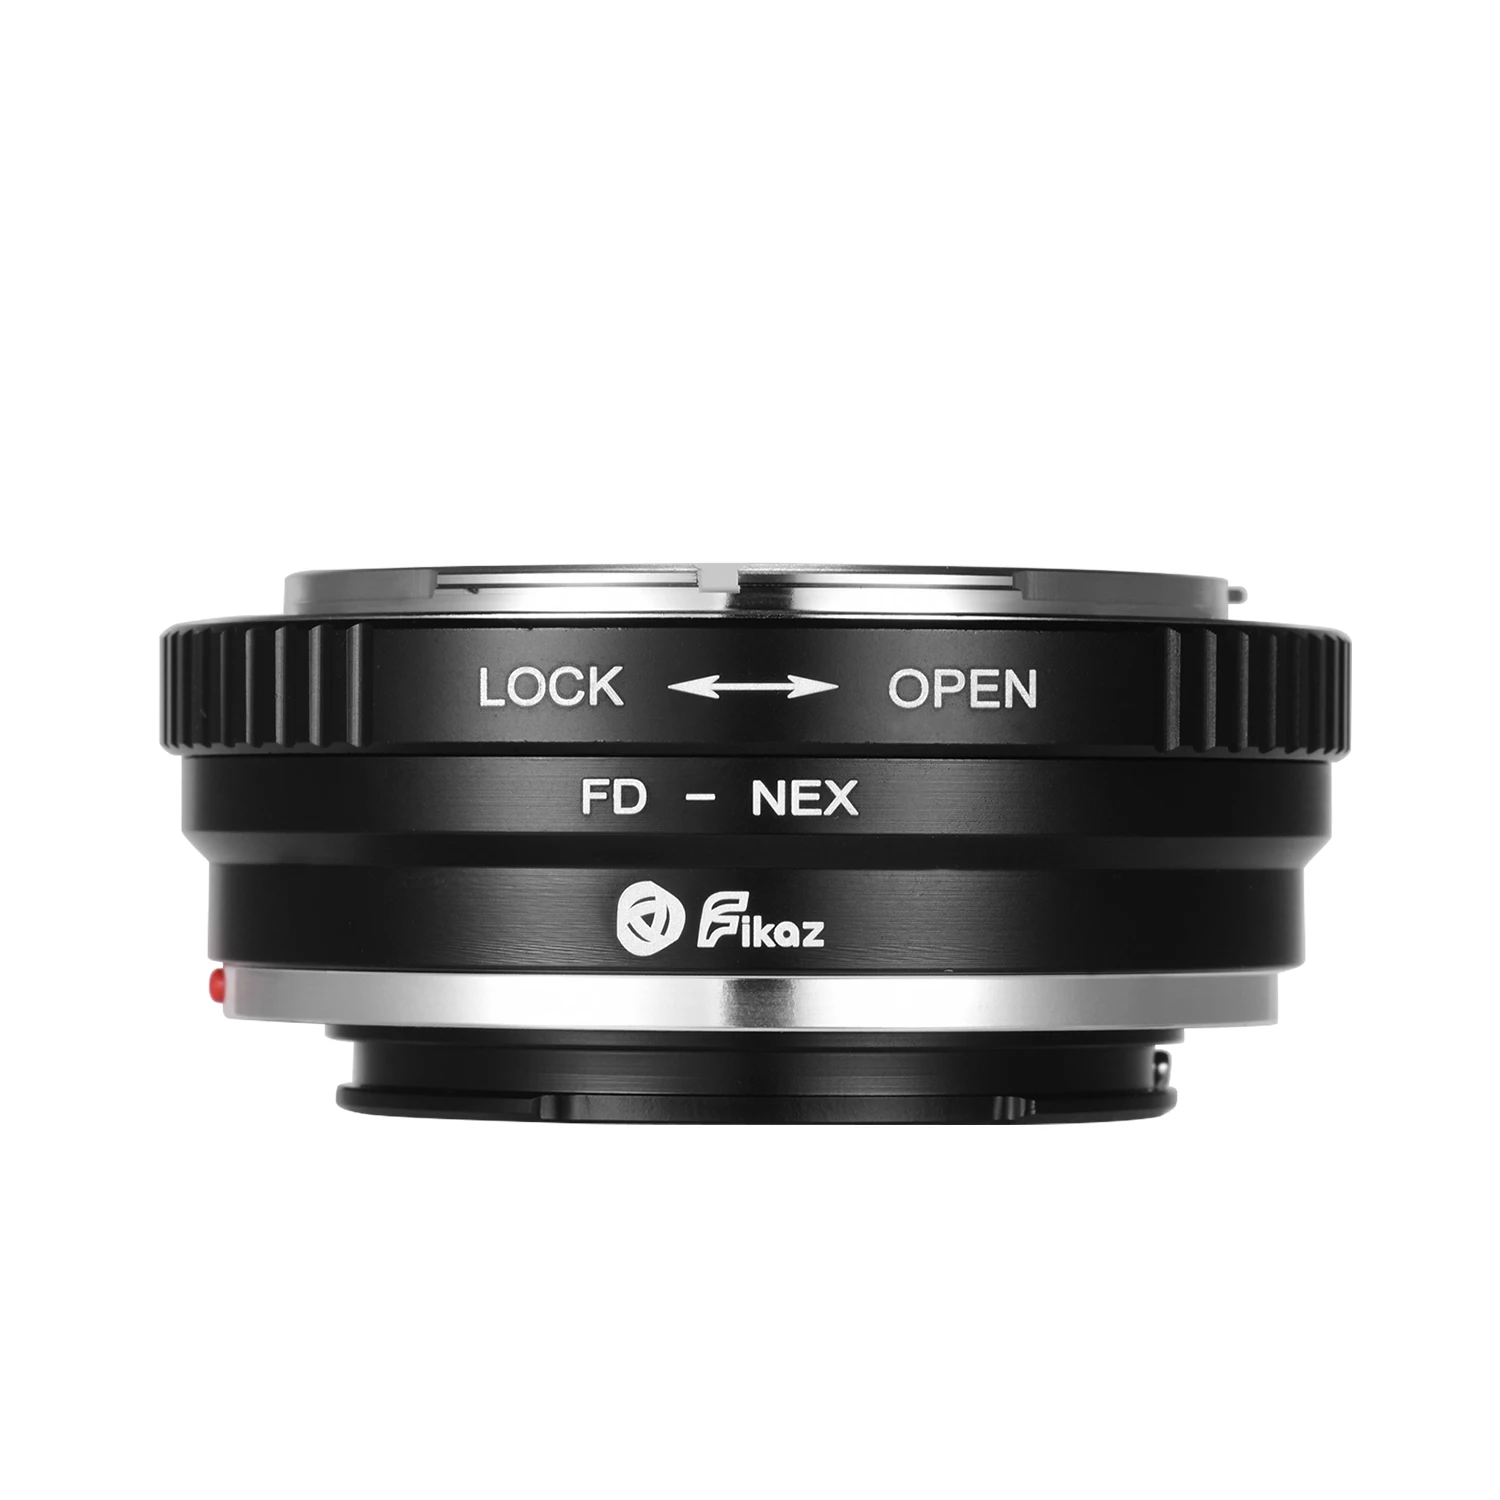 Переходное кольцо Fikaz LM/M42/NIKONG/Nikon/MD/FD/PK/CY/EOS/OM NEX из алюминиевого сплава для